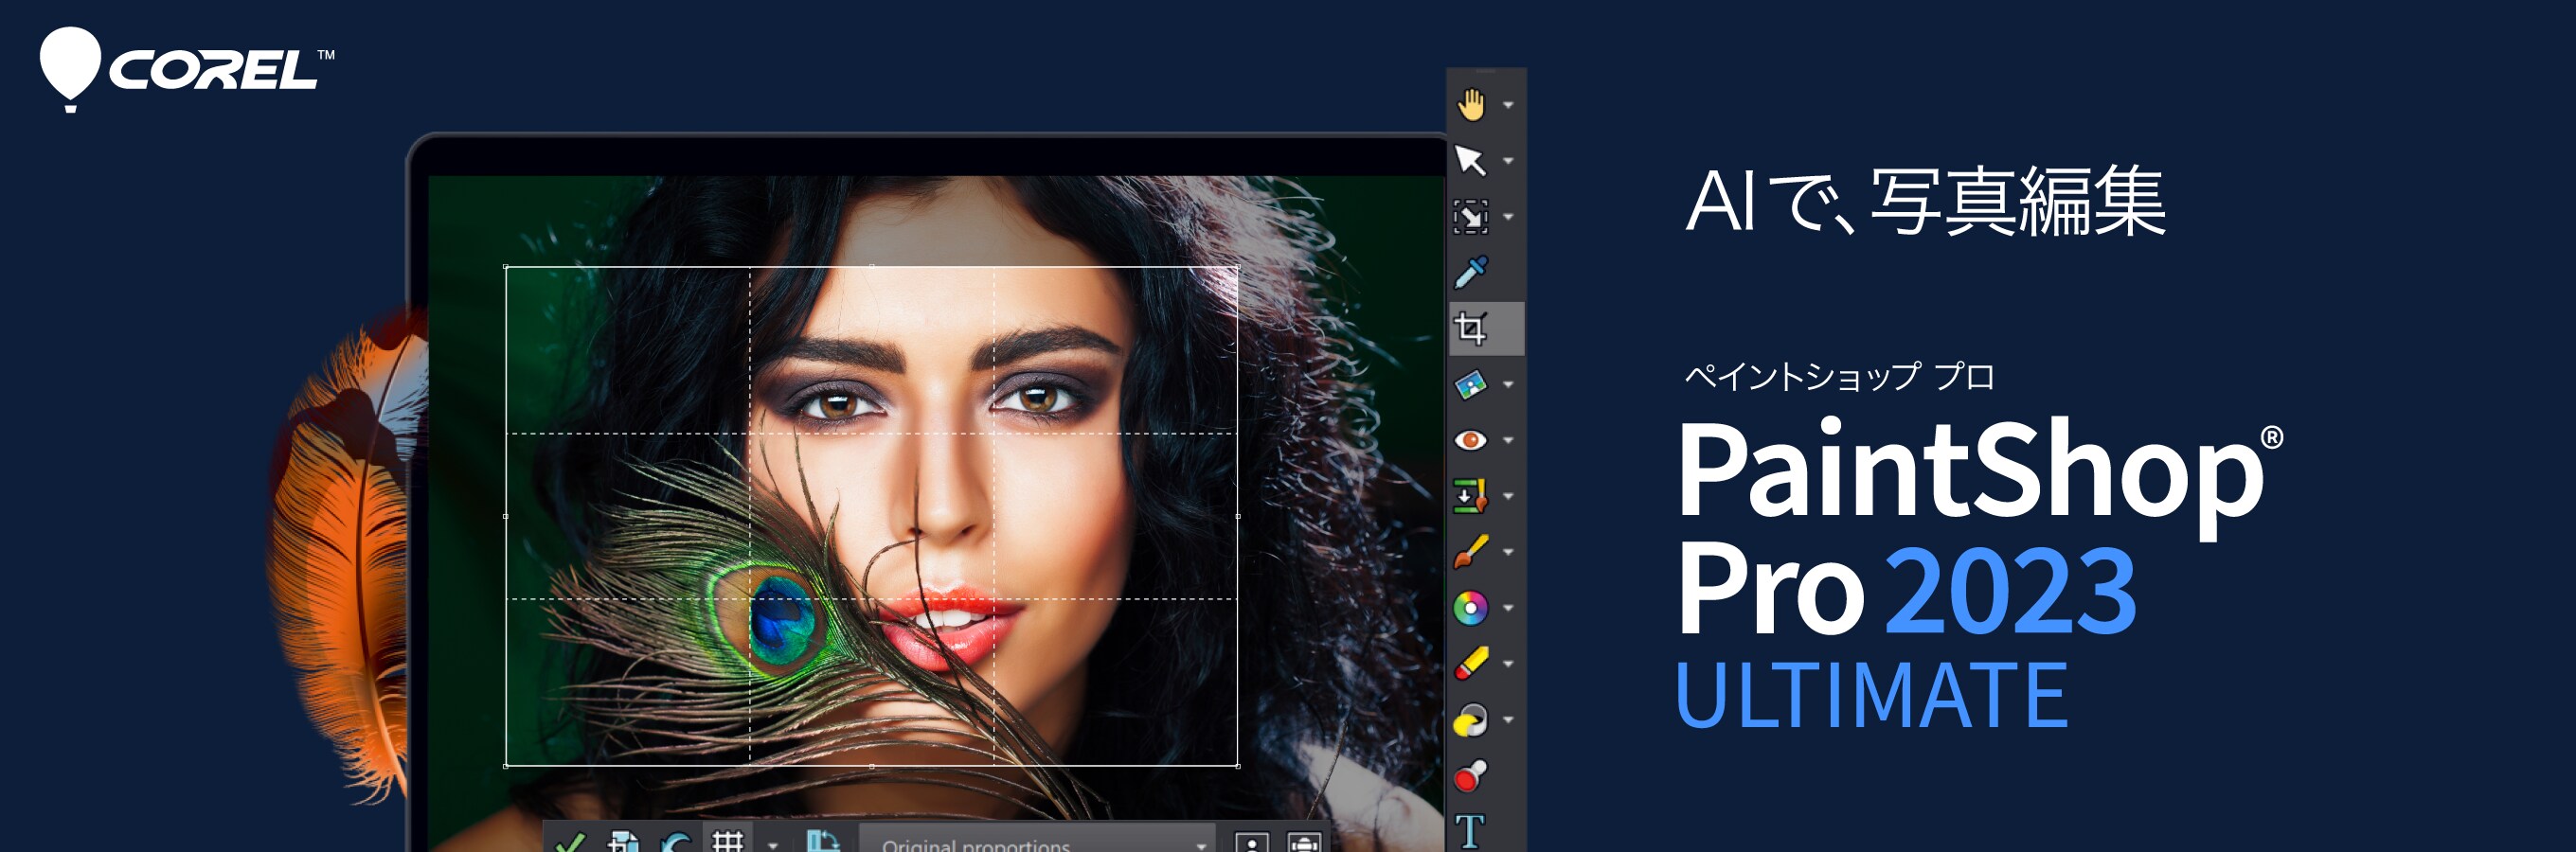 PaintShop Pro 2023 Ultimate - 写真編集ソフト